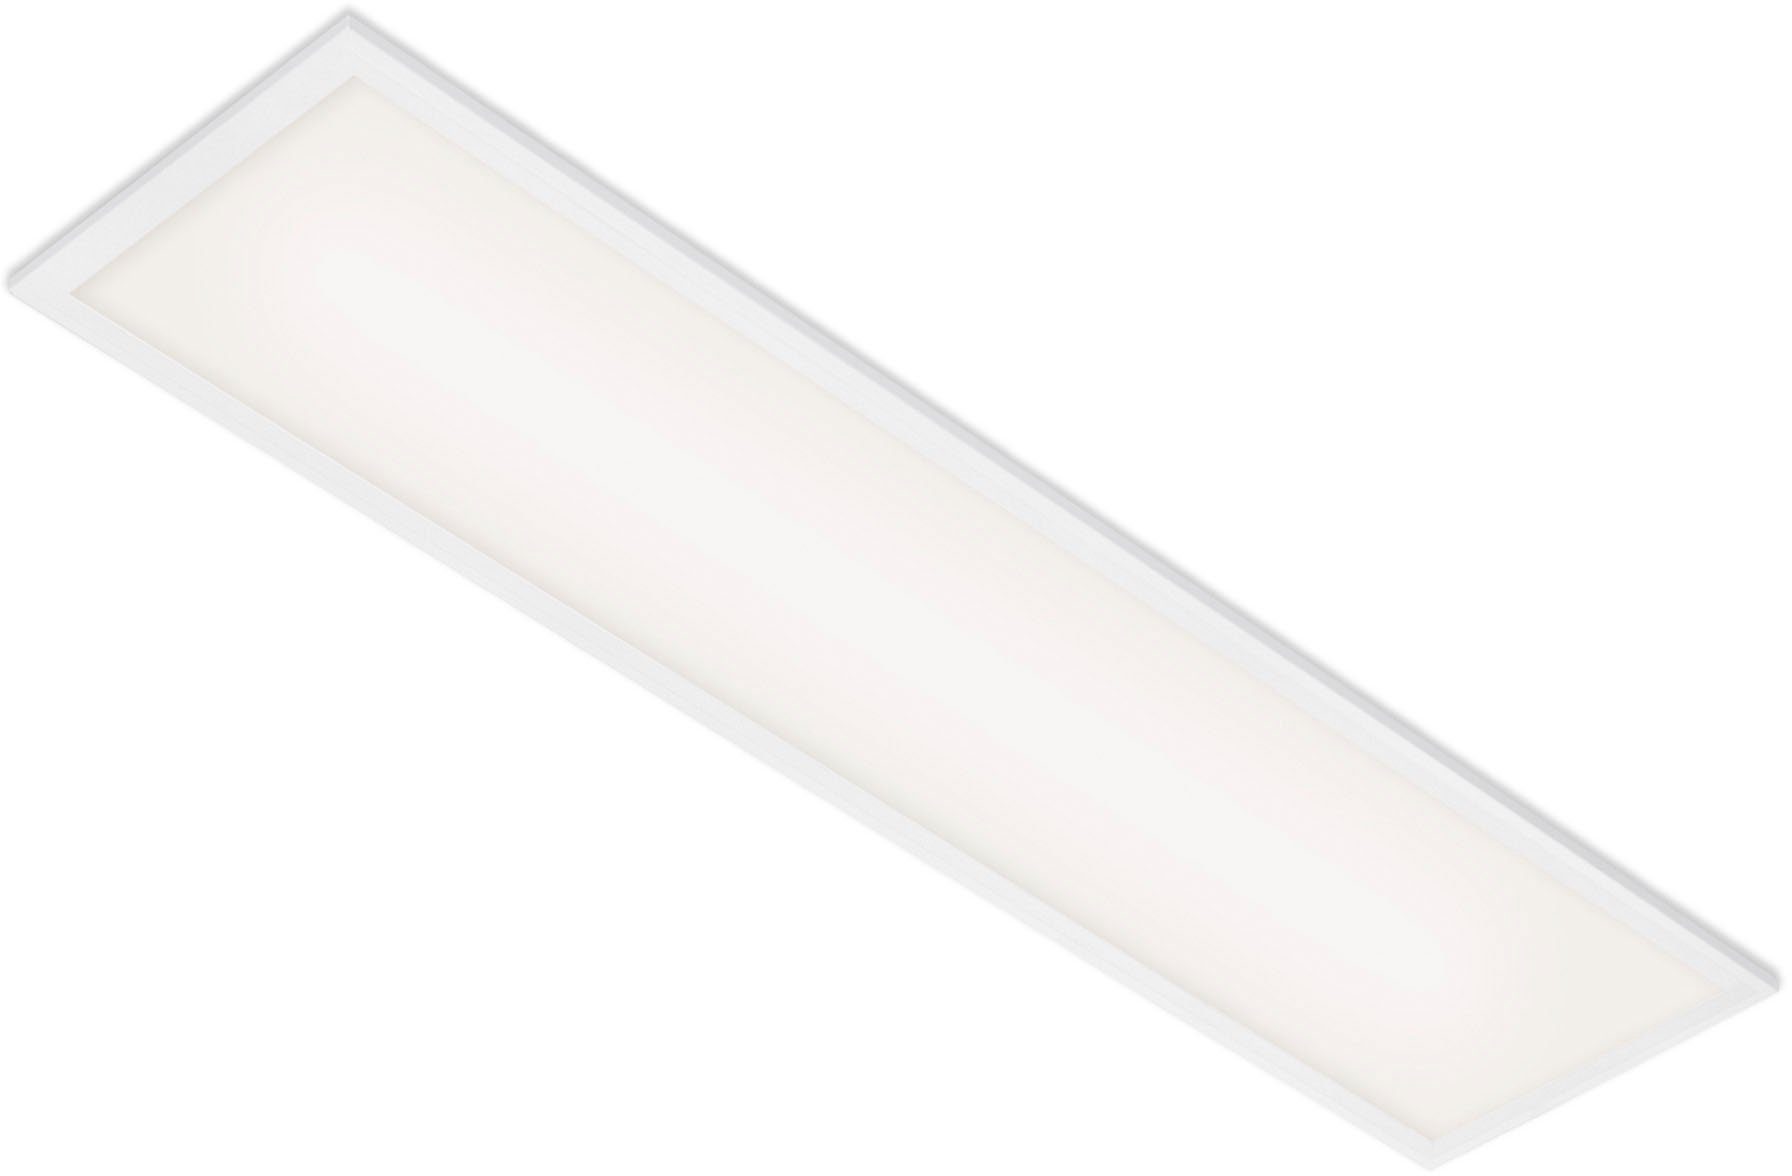 Briloner Leuchten LED Panel 7067016 Simple, LED fest integriert, Neutralweiß, Deckenlampe, 100x25x6cm, Weiß, 22W, Wohnzimmer, Schlafzimmer, Küche